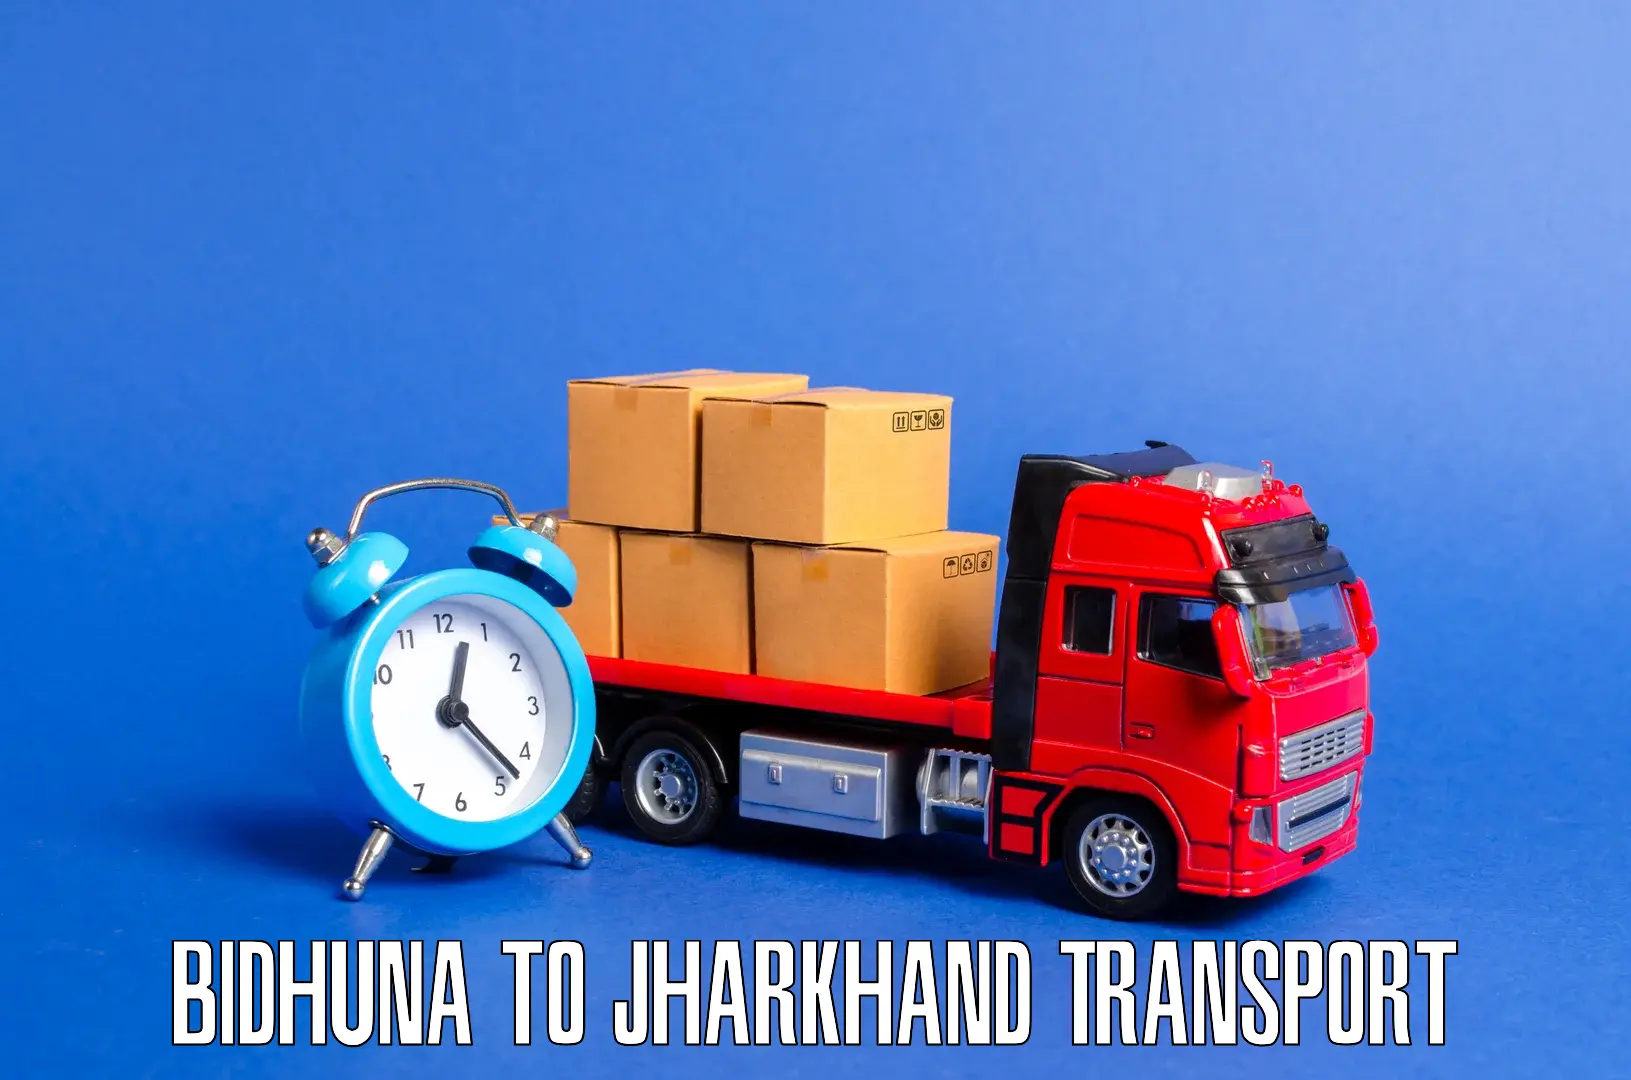 Daily parcel service transport in Bidhuna to Gumla